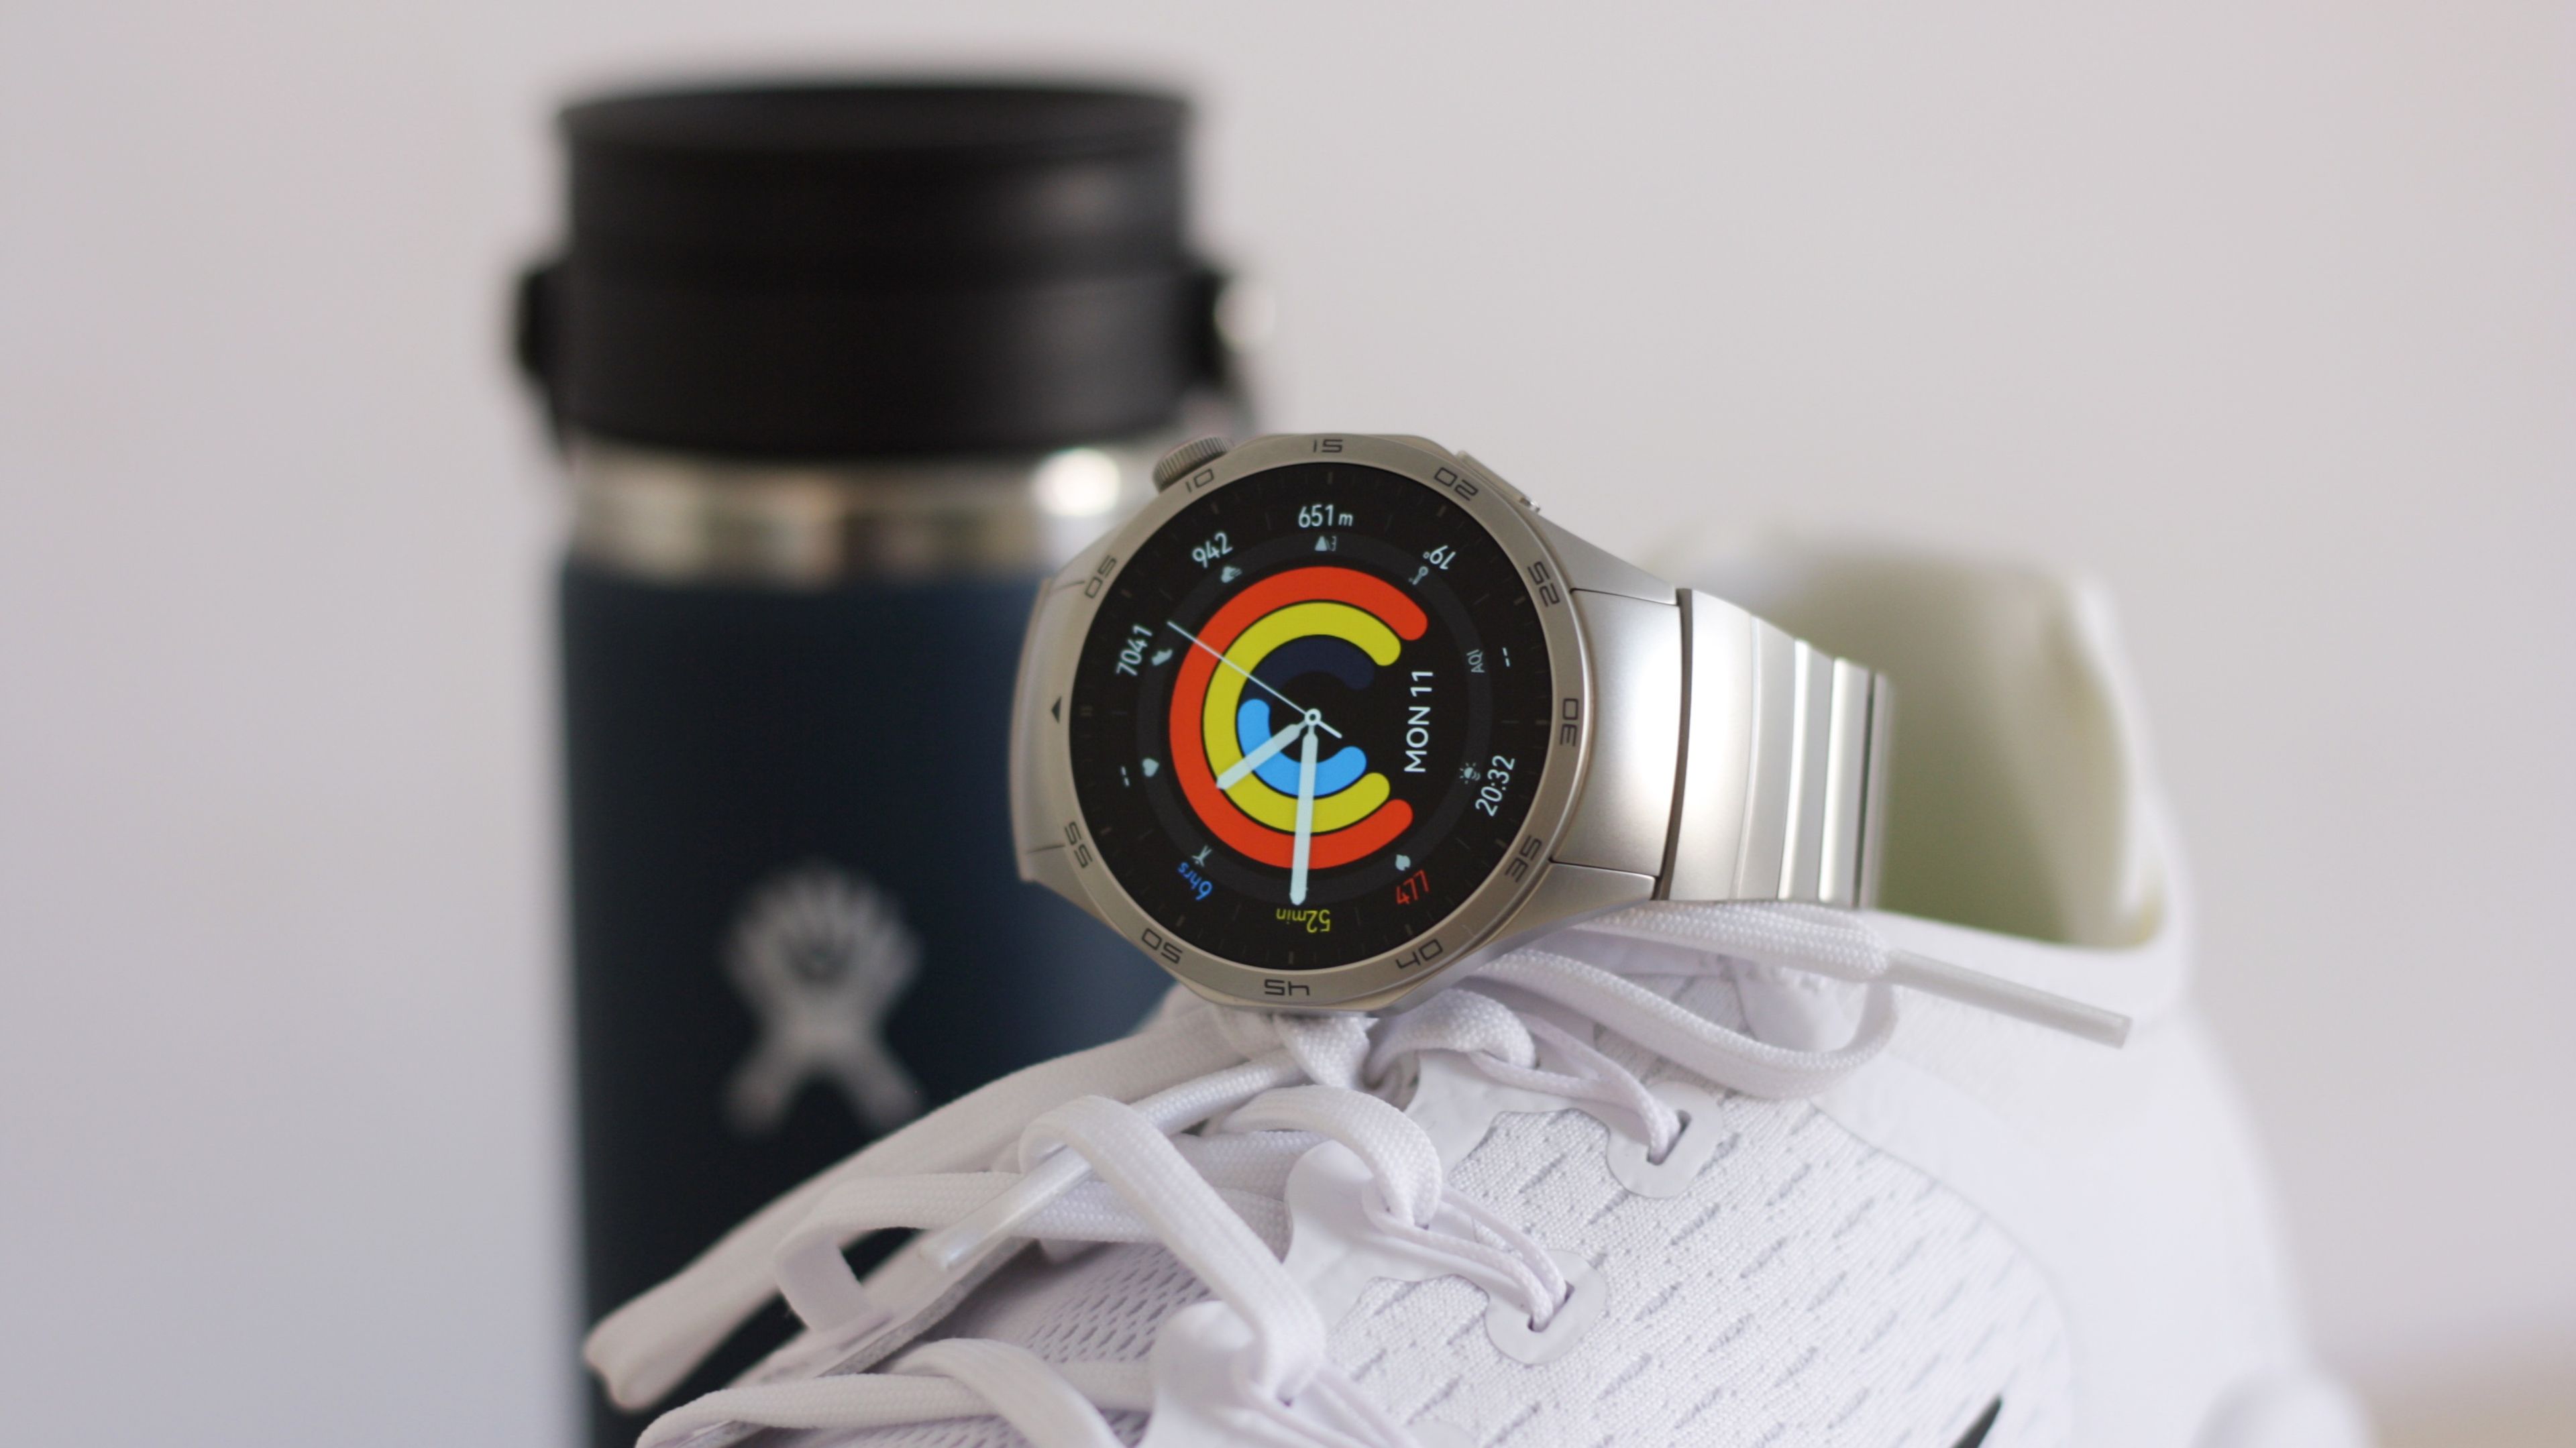 Huawei Watch GT 4: lo último en tecnología sin renunciar al estilo, Tecnología, Escaparate